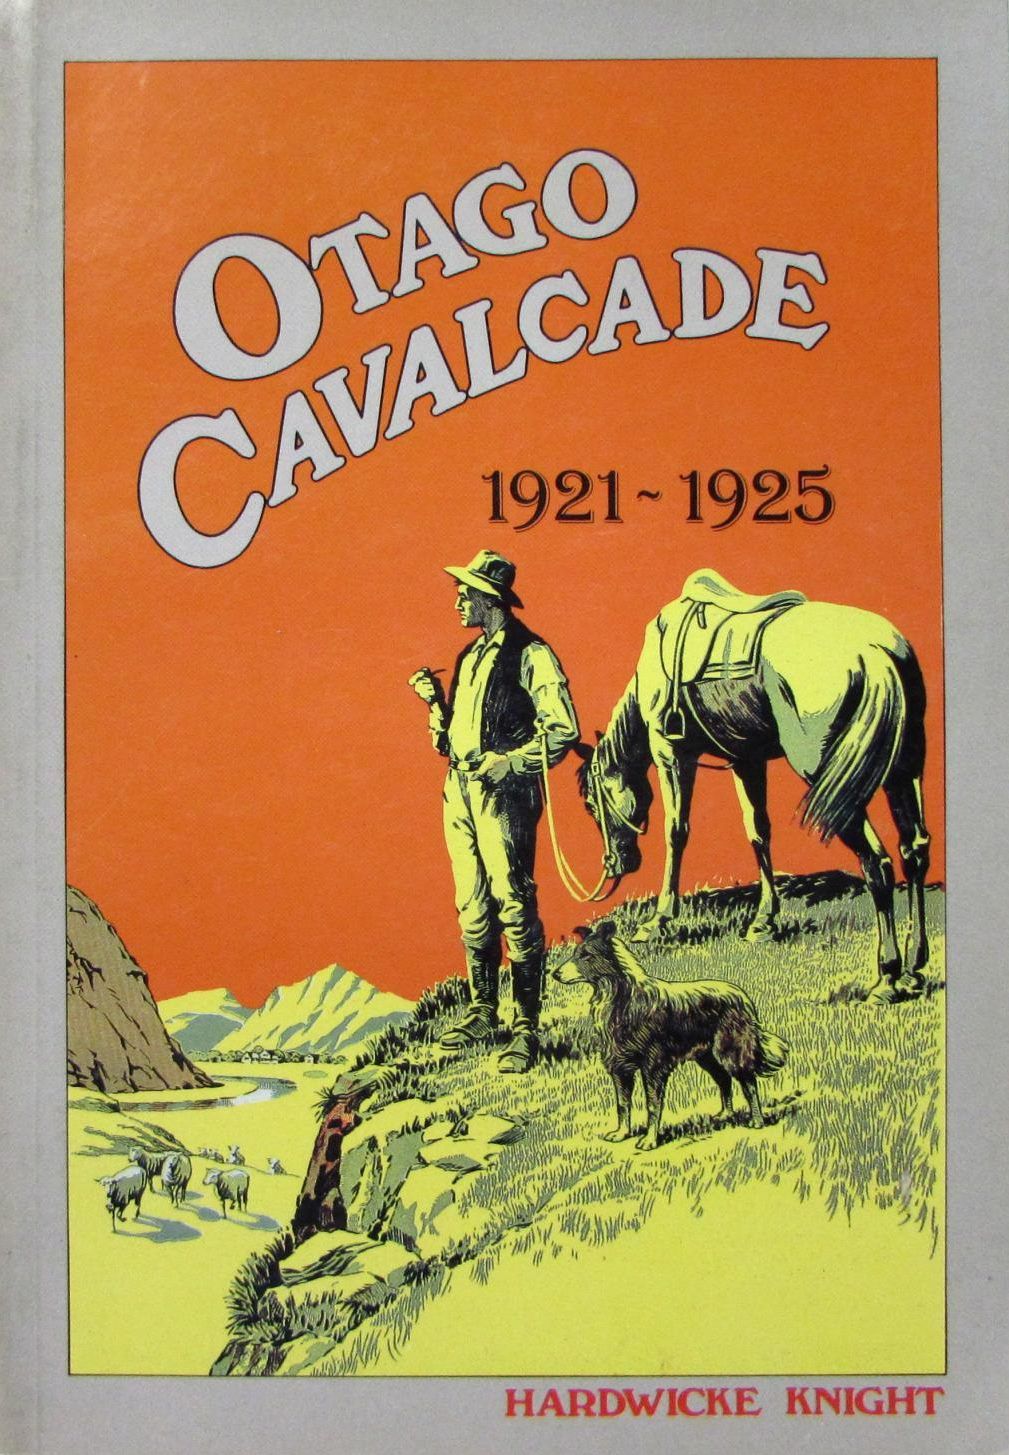 OTAGO CAVALCADE 1921 - 1925